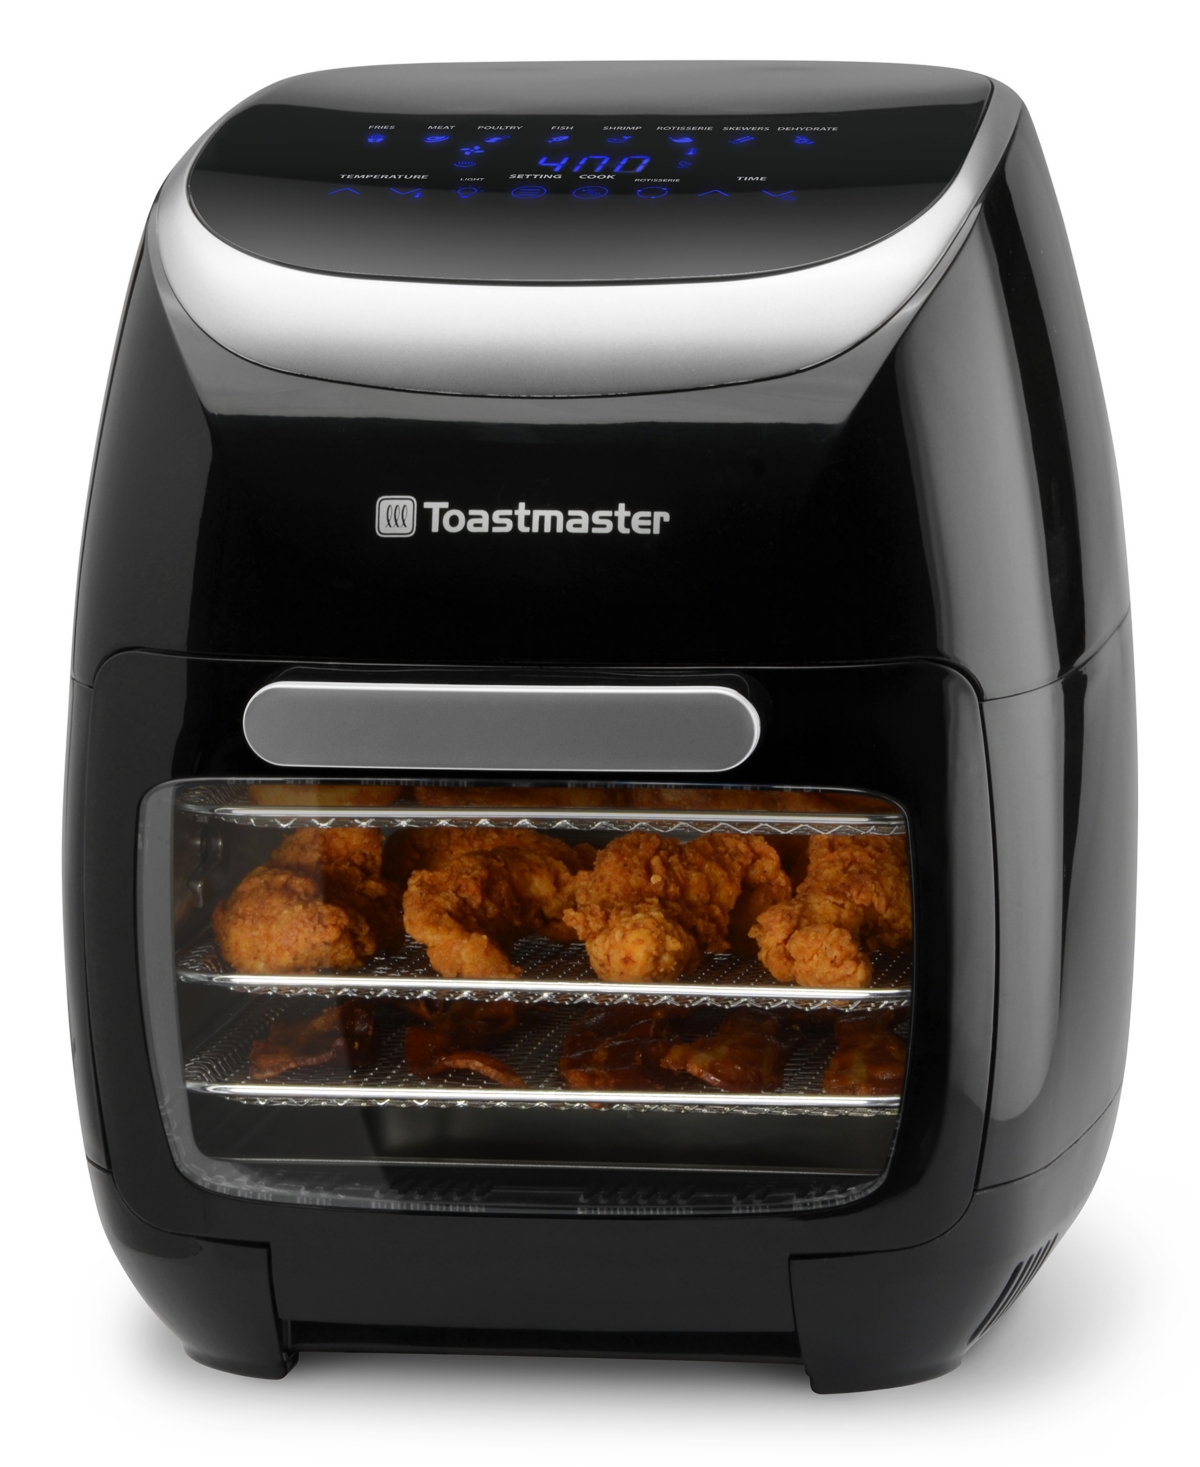 Toastmaster 11-liter Digital Air Fryer And Rotisserie In Black